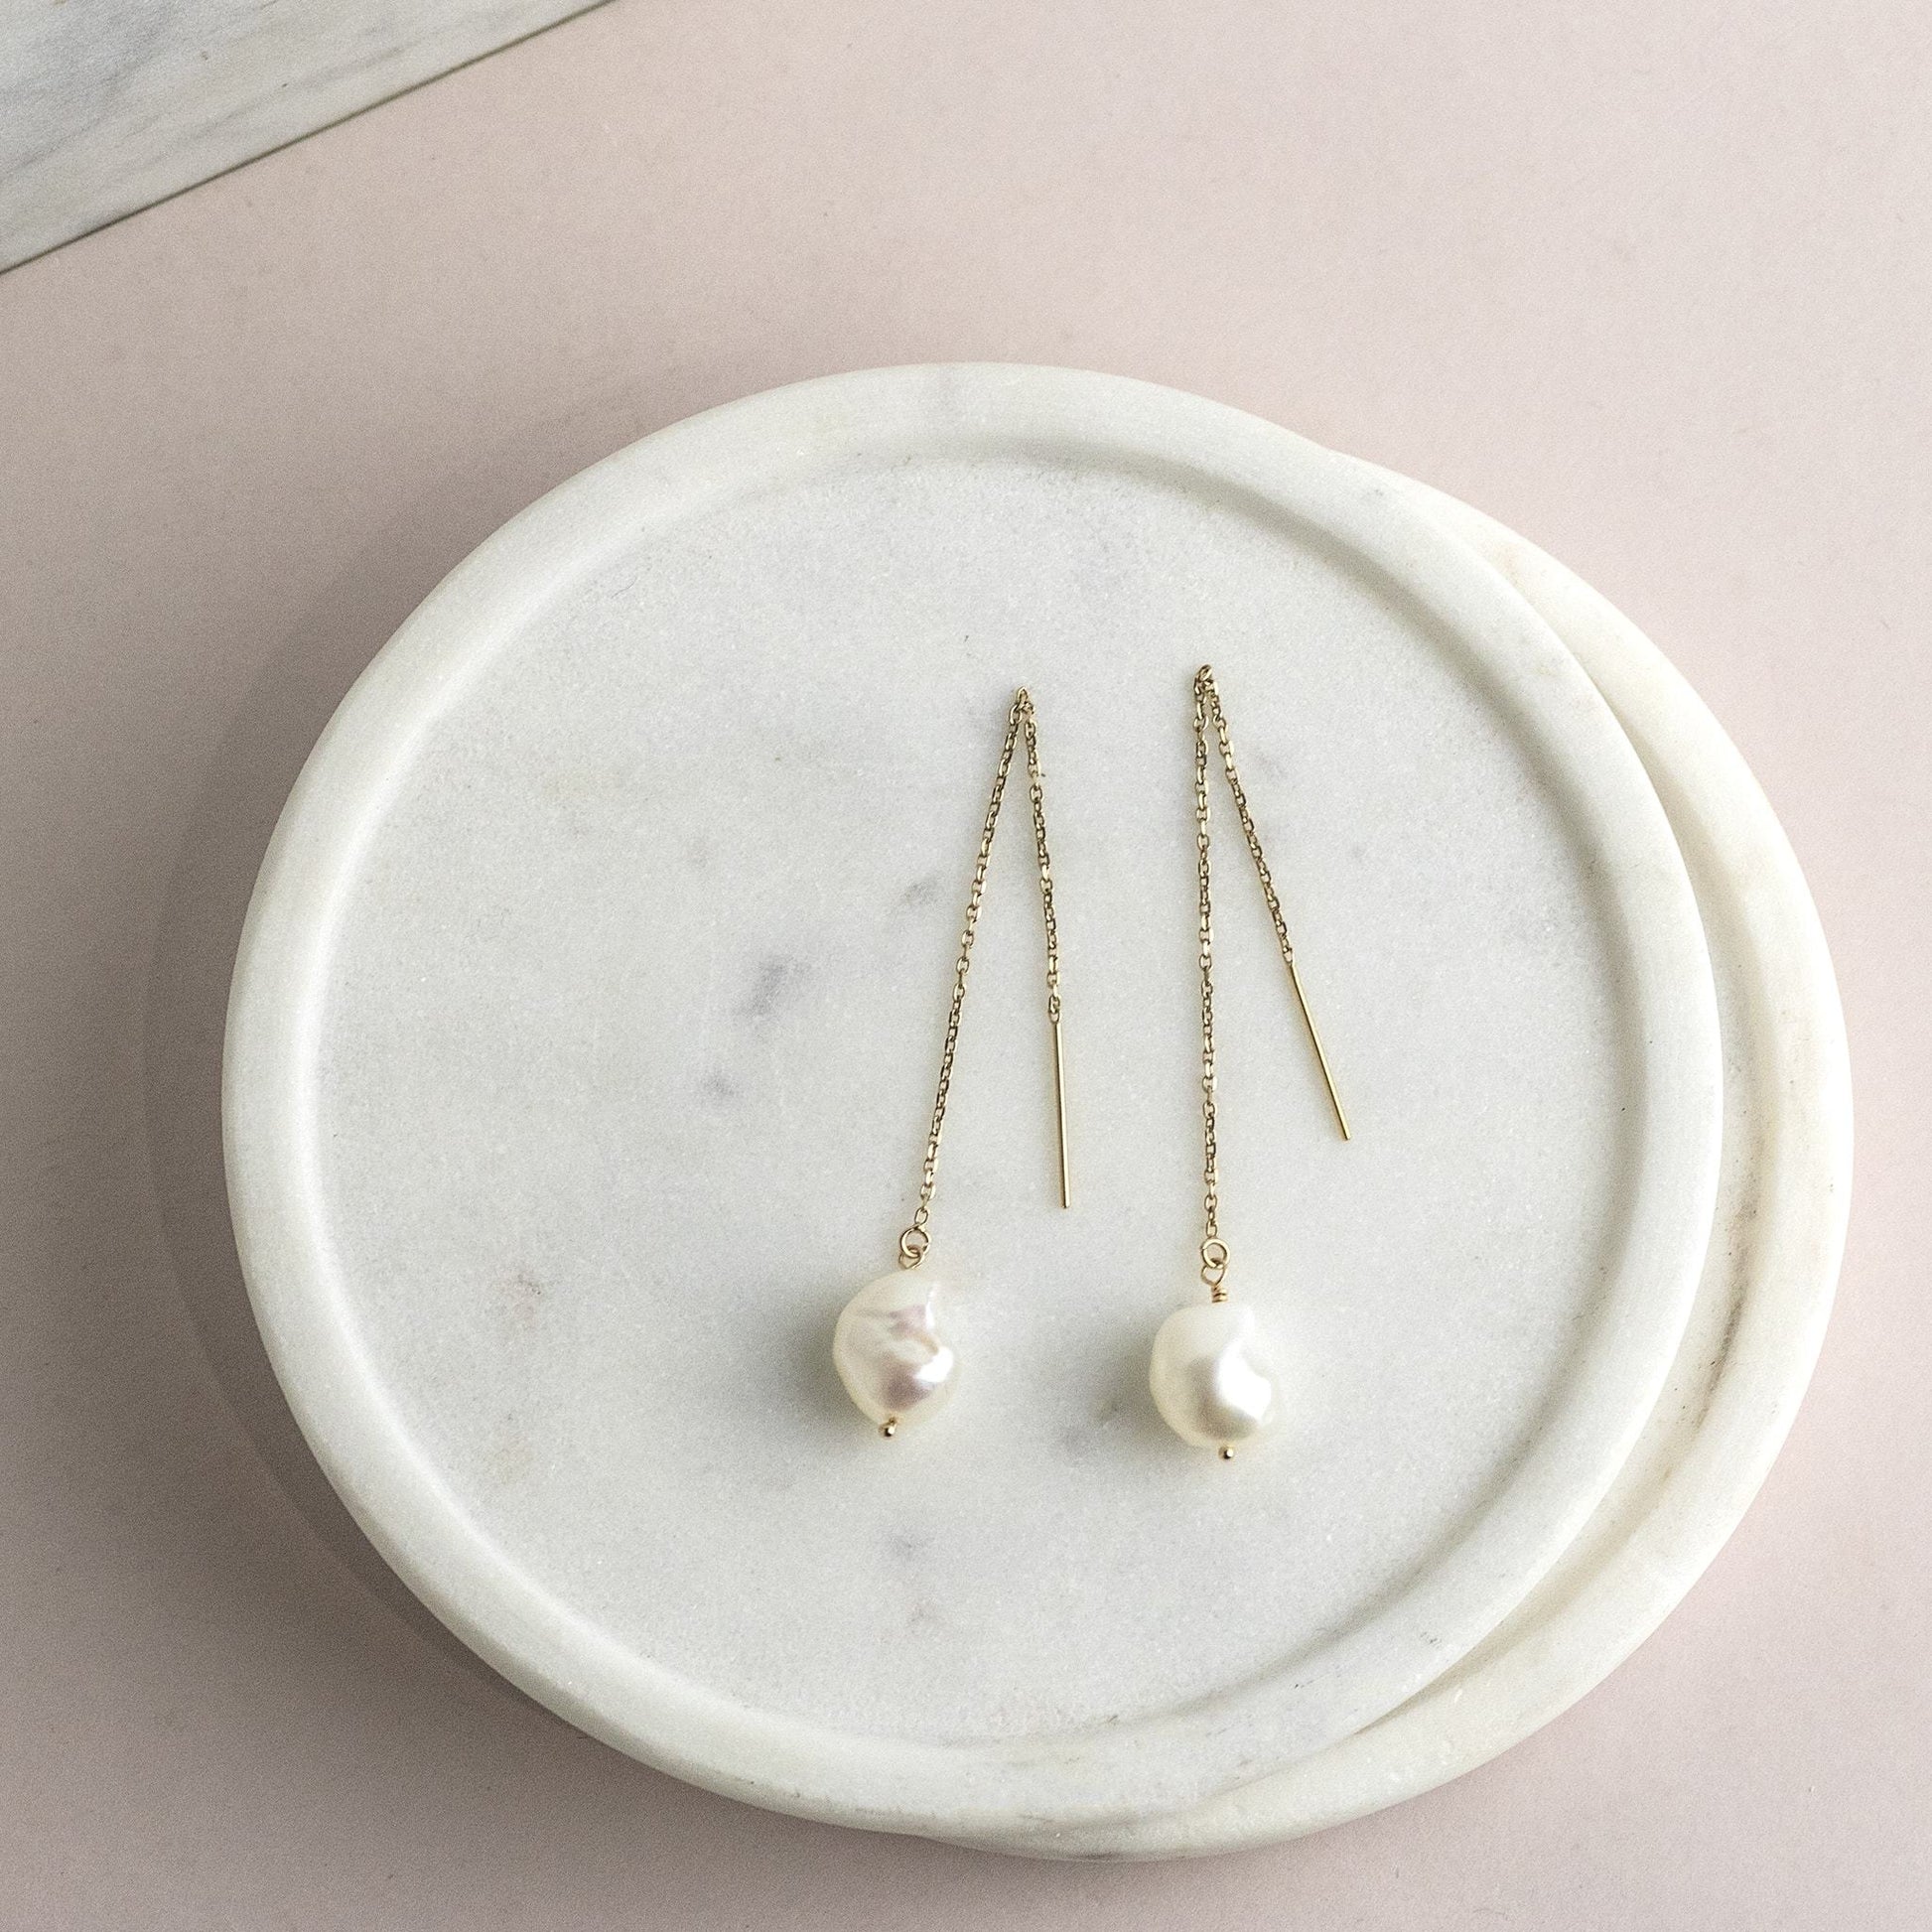 Pearl Threader Earrings - Christmas Gift for Her